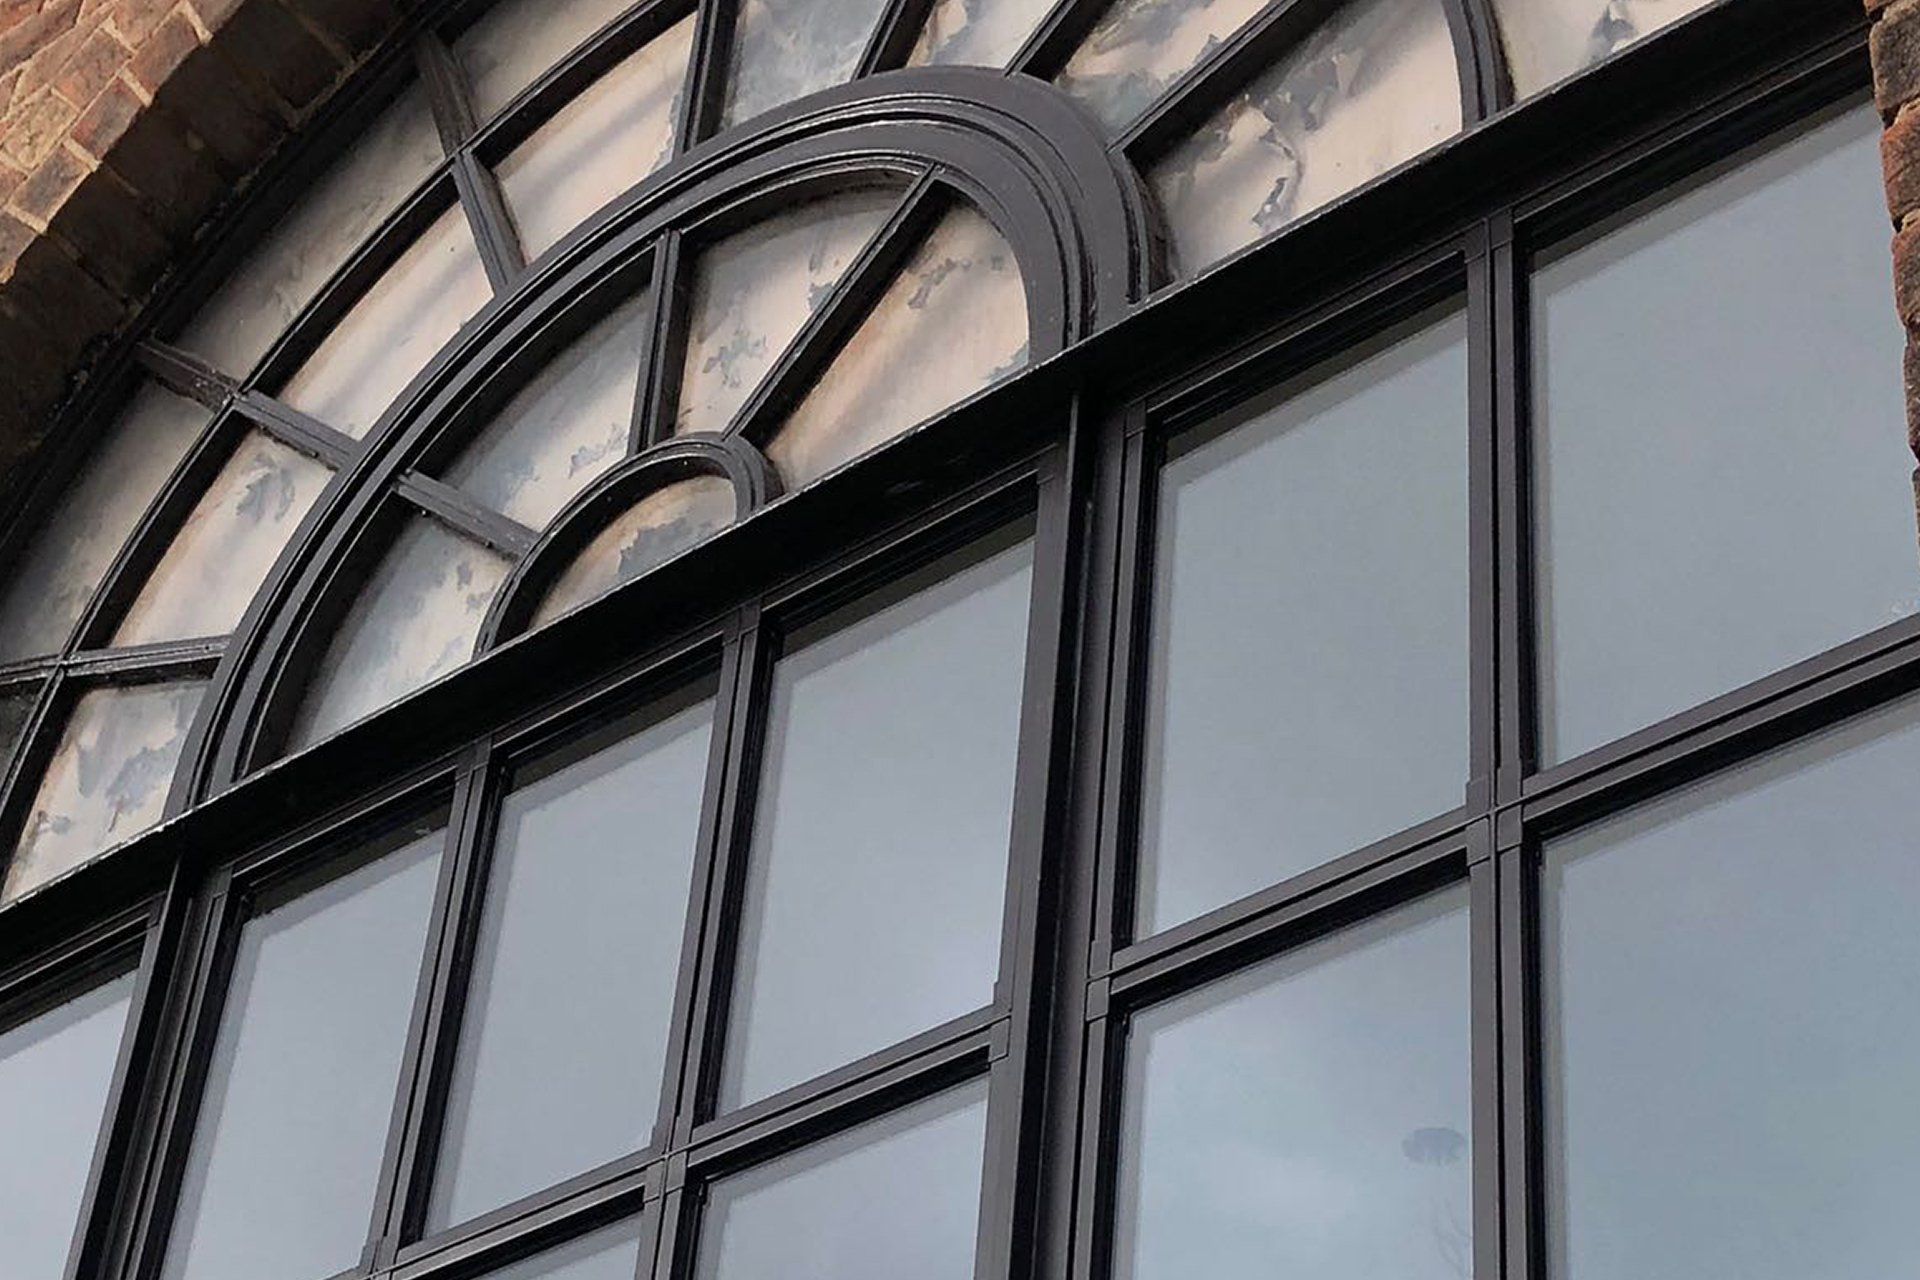 Commercial metal window